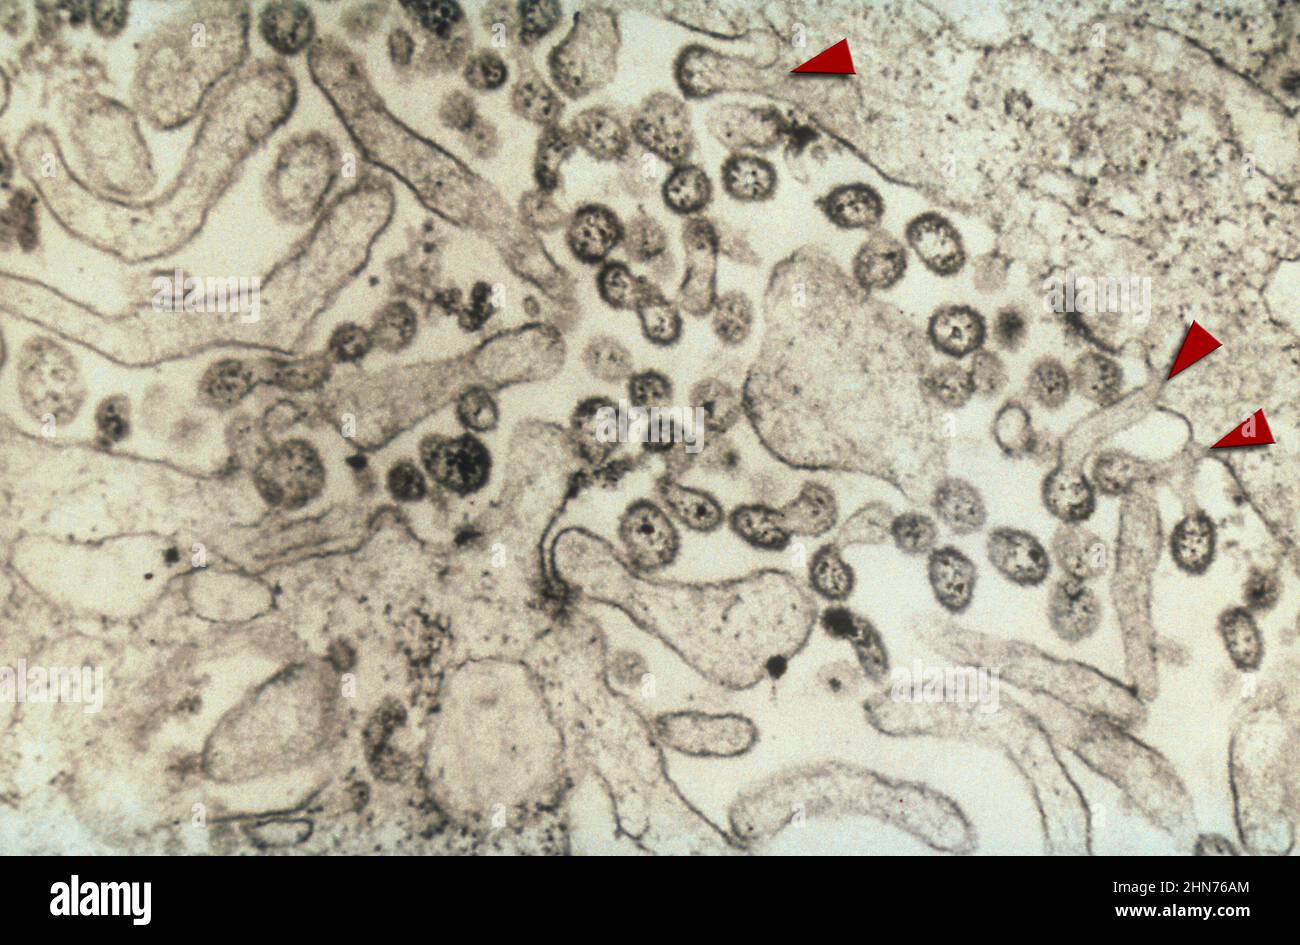 Image TEM, représentant de nombreuses virions du virus Lassa. Beaucoup de virions peuvent être vus à l'extérieur des limites de la cellule hôte, mais certains se sont brisés Banque D'Images